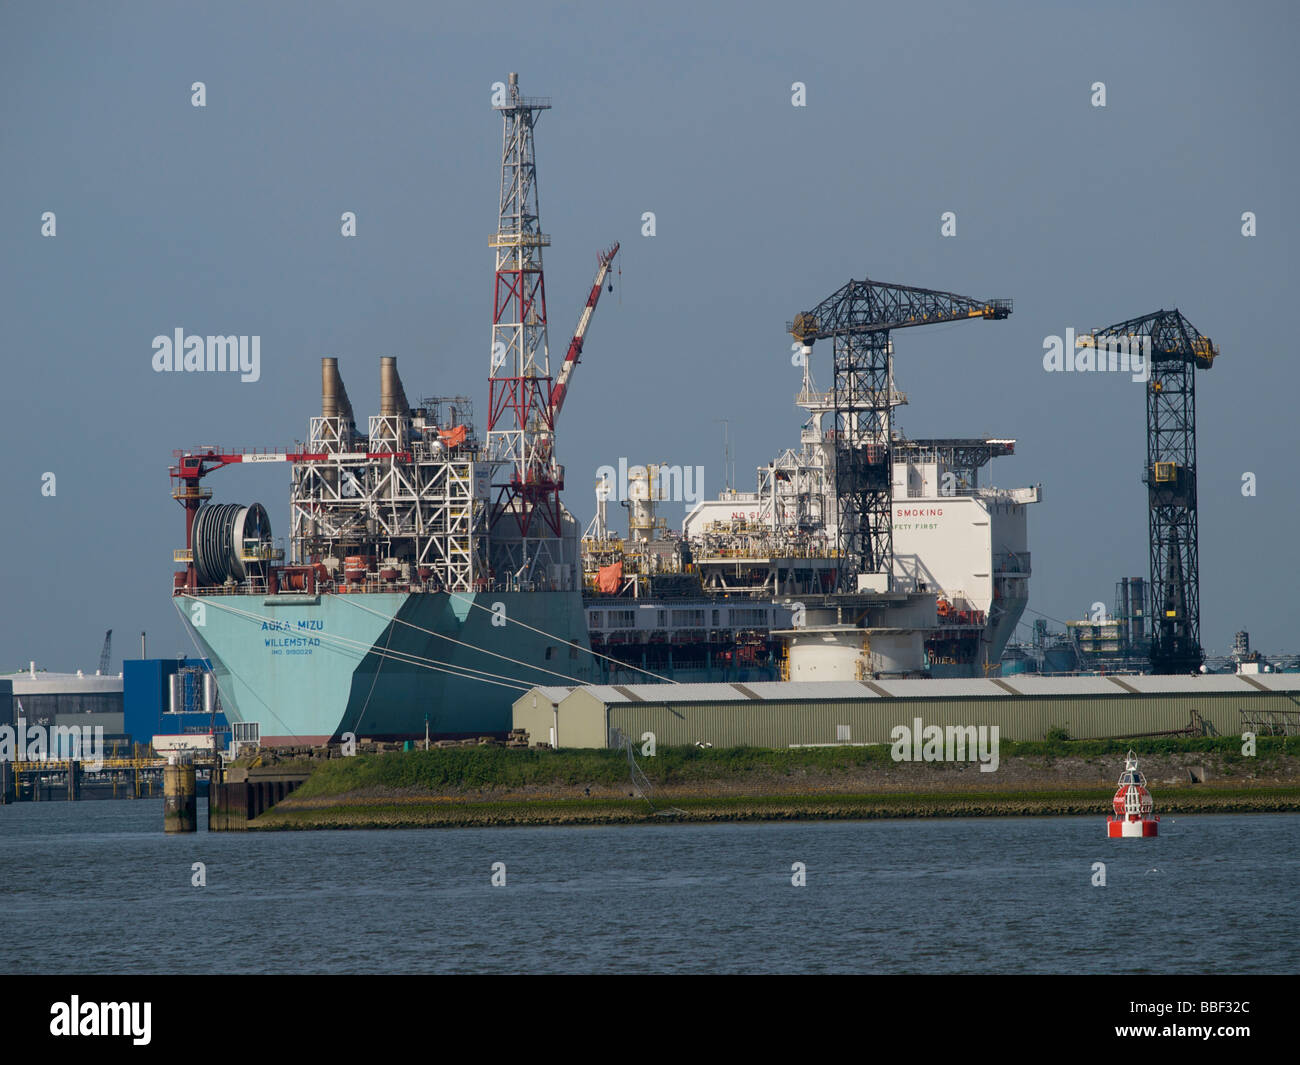 der Aoka Mizu ist ein Zweck Produktion Schiff von 246m Länge eine schwimmende Öl-Produktion-Plattform gebaut. Hafen von Rotterdam, Niederlande Stockfoto